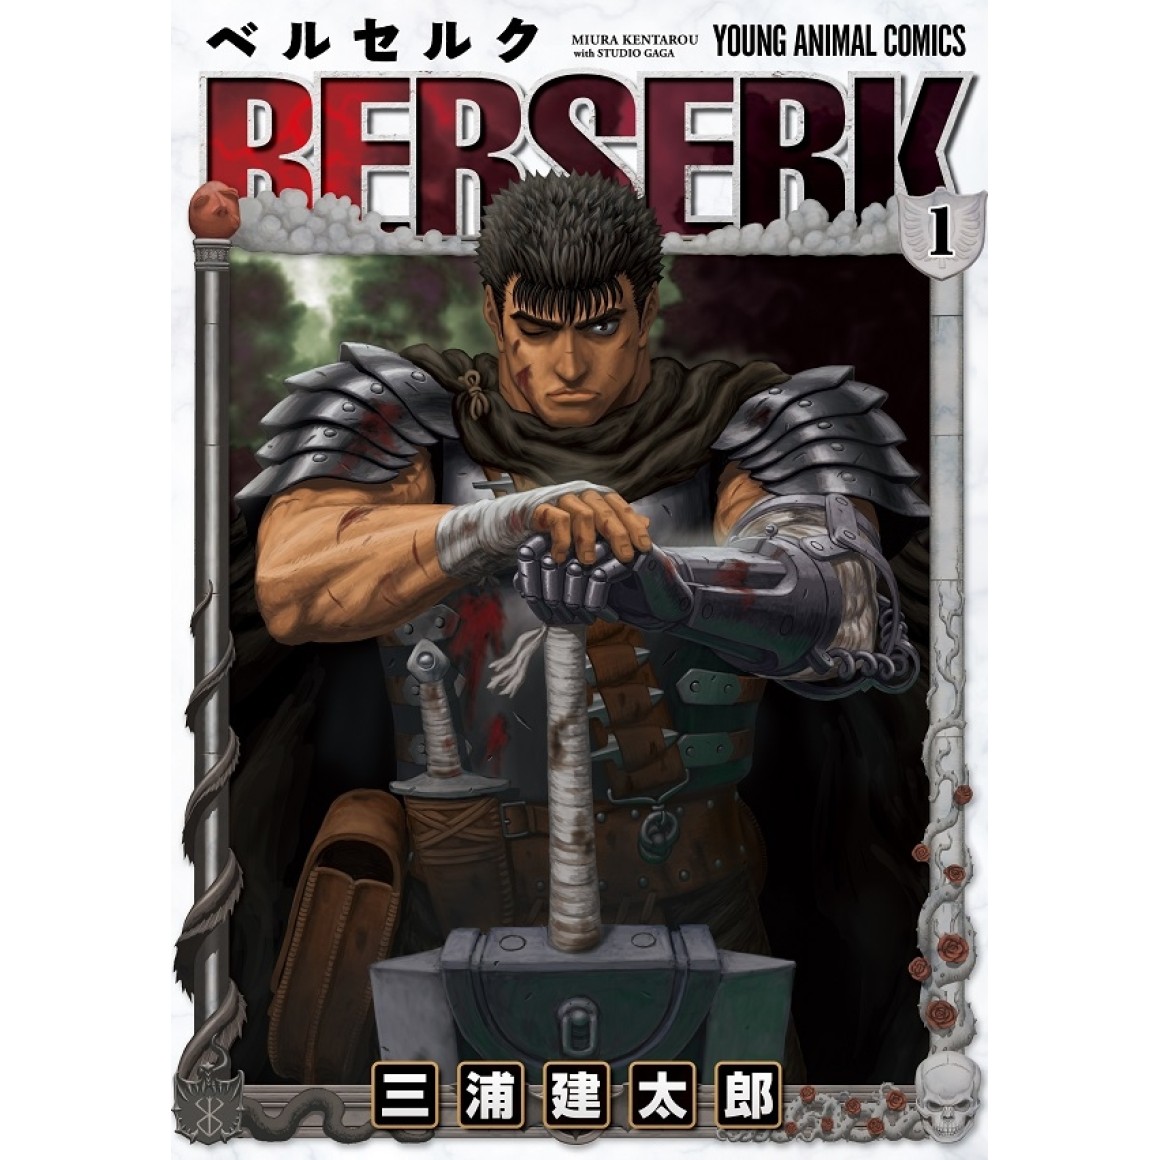 Bōshoku no Berserk tem data de estreia confirmada - Manga Livre RS